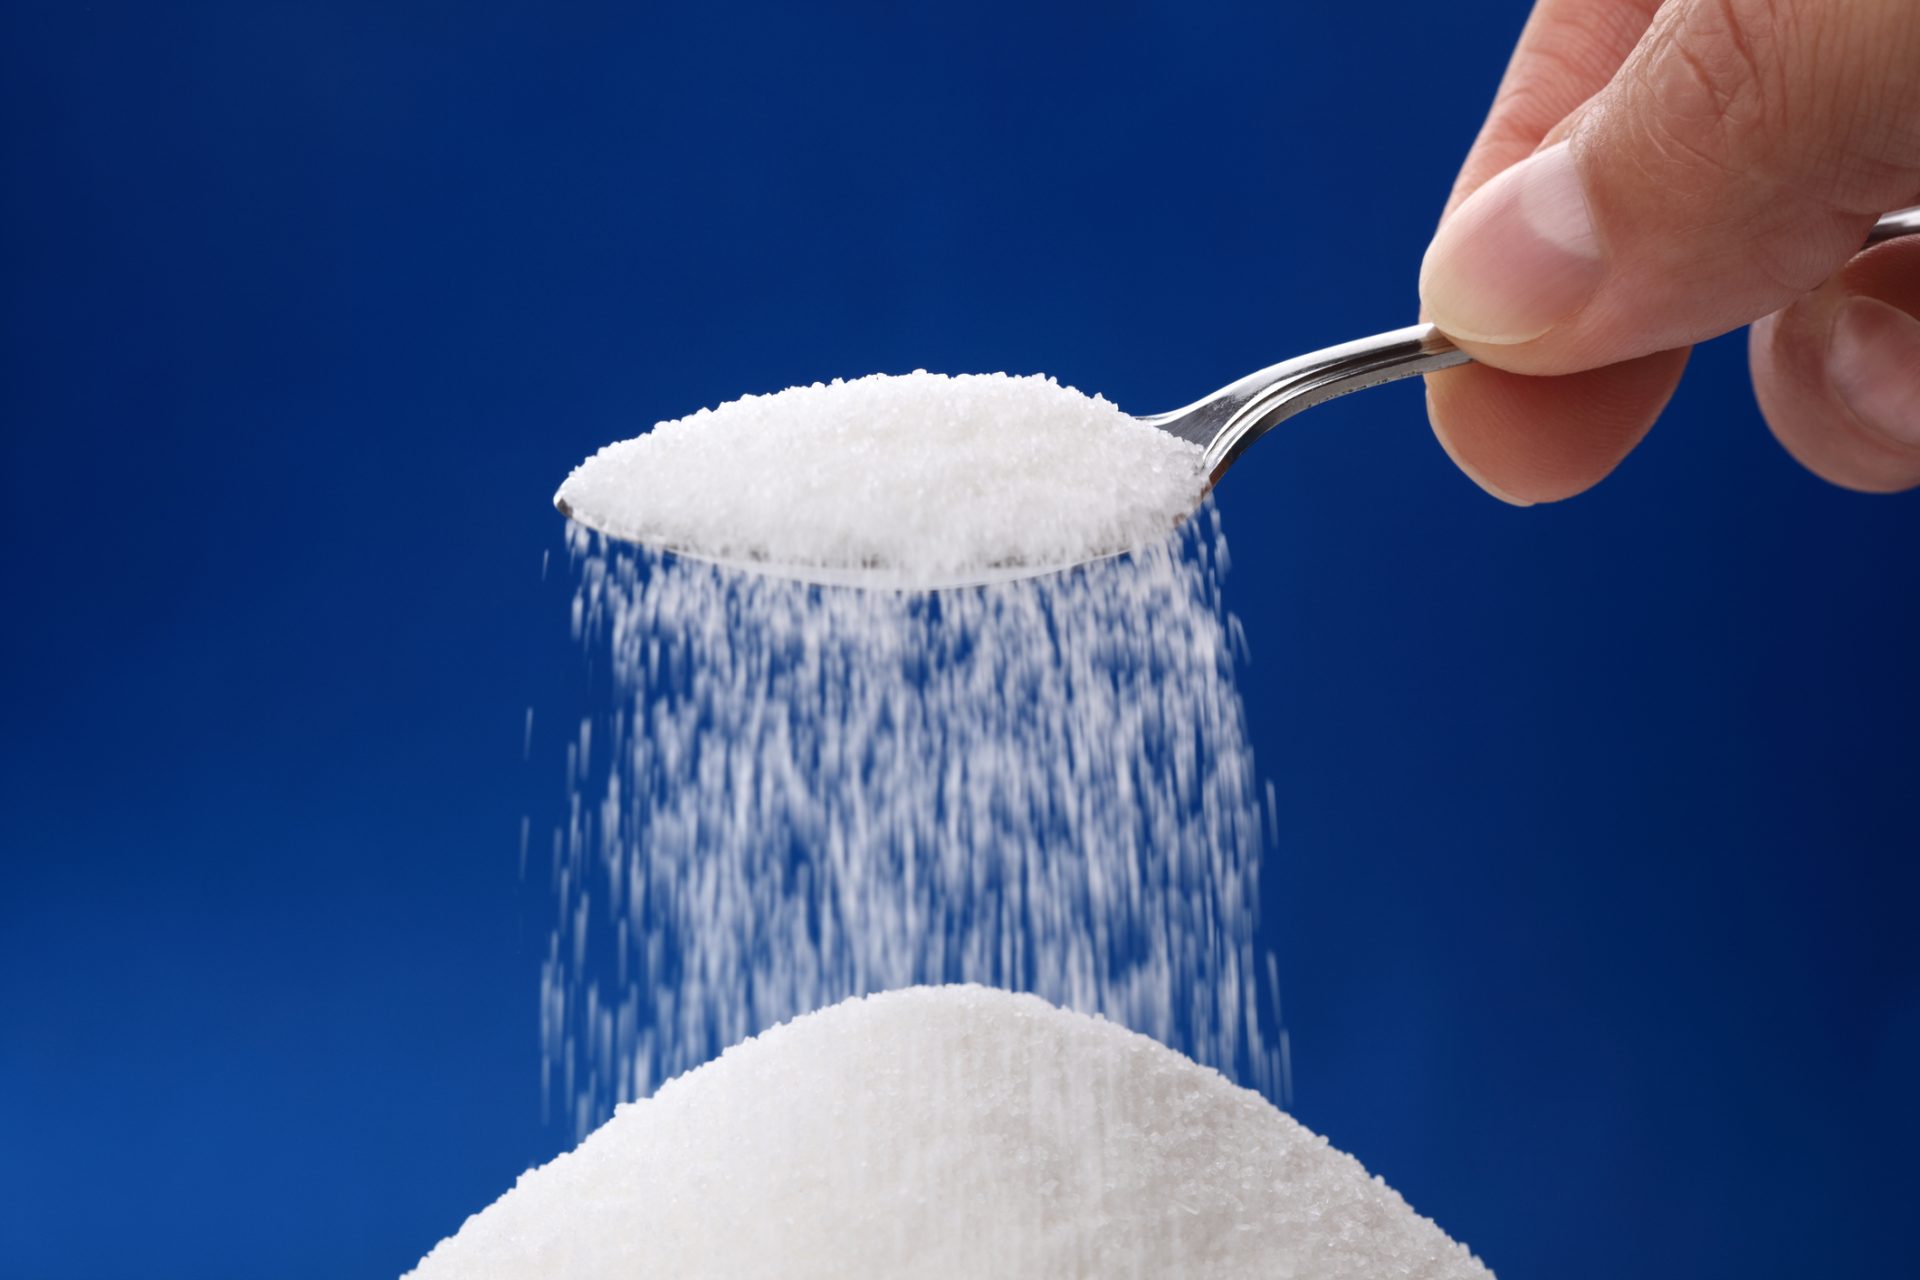 Portugal regista redução de cerca de 11% de sal e açúcar em alguns alimentos em três anos